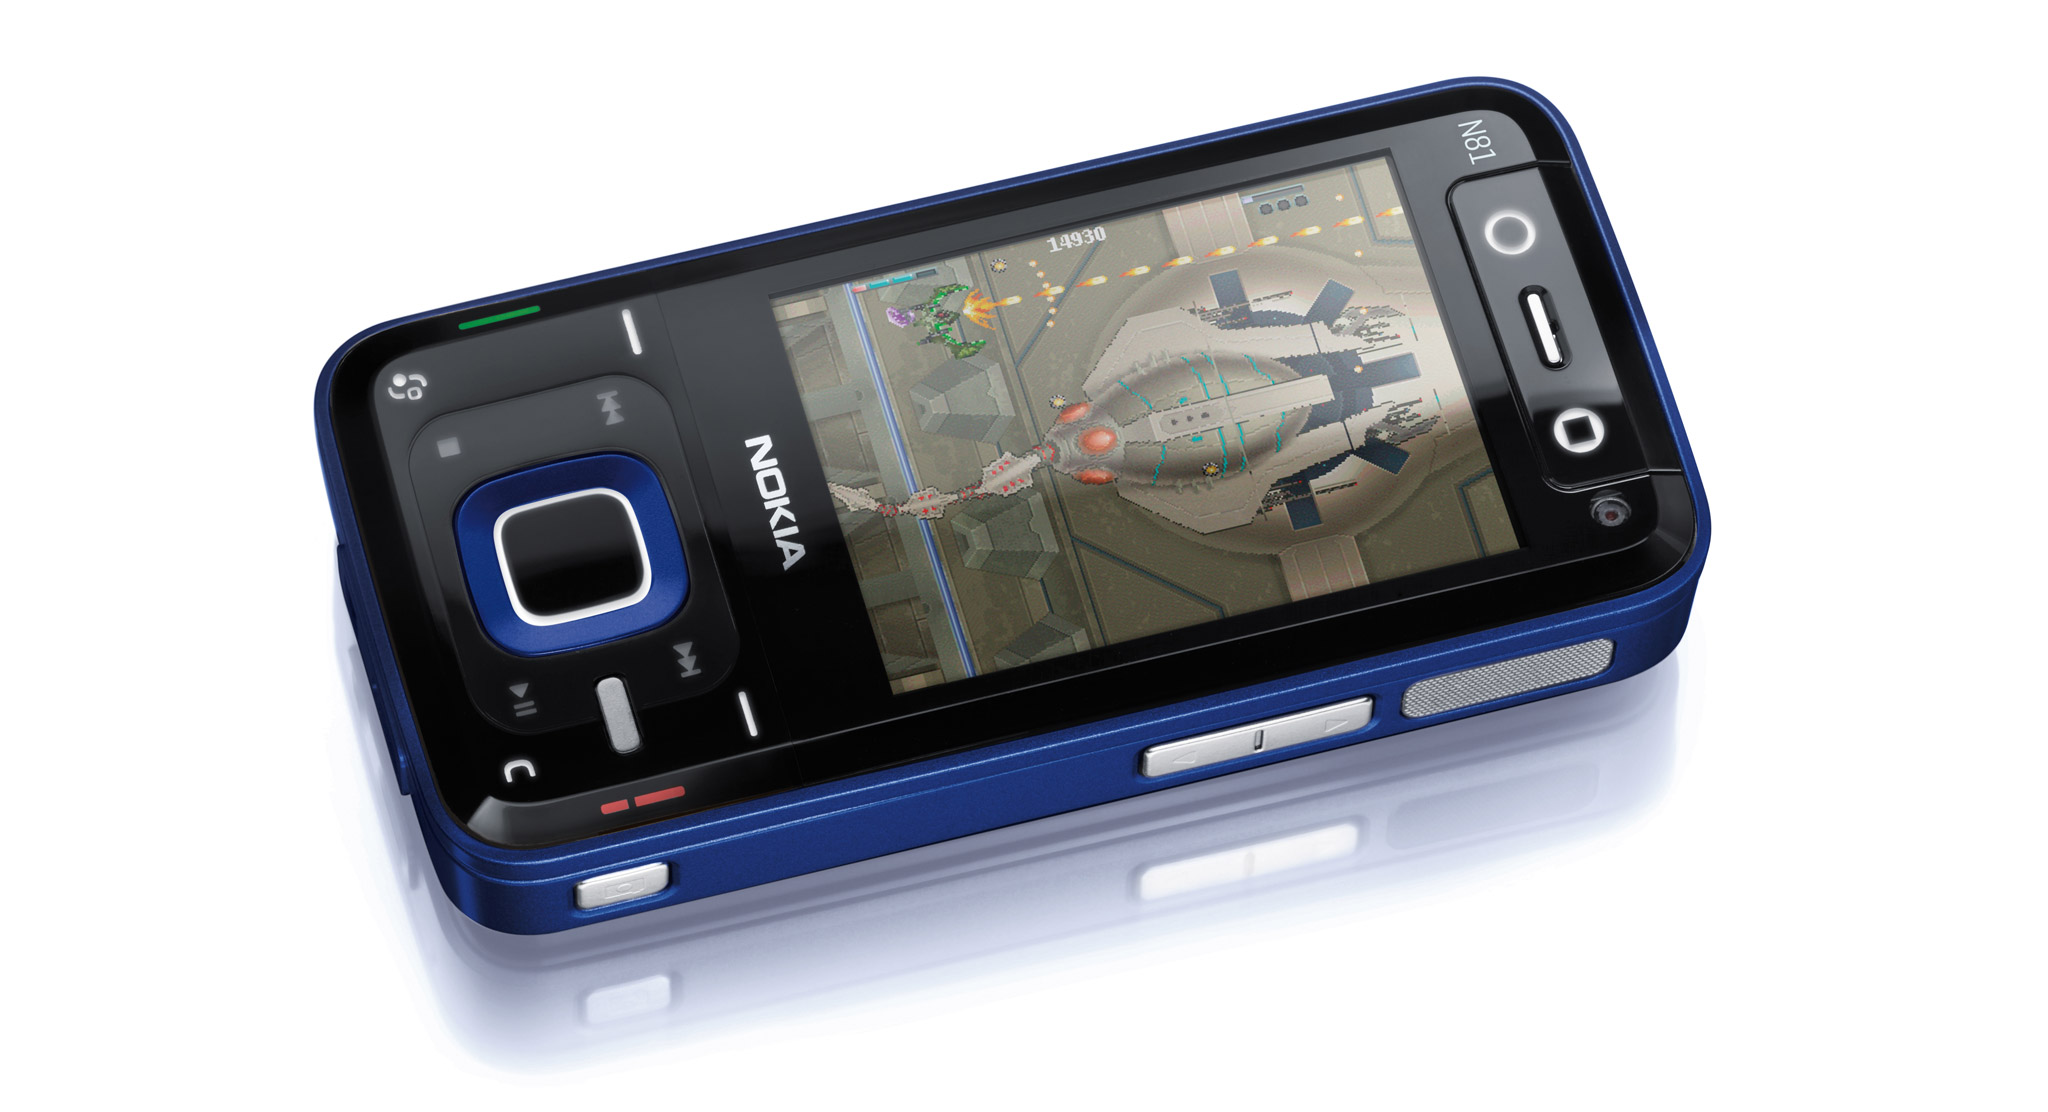 Nokia_N81.jpg